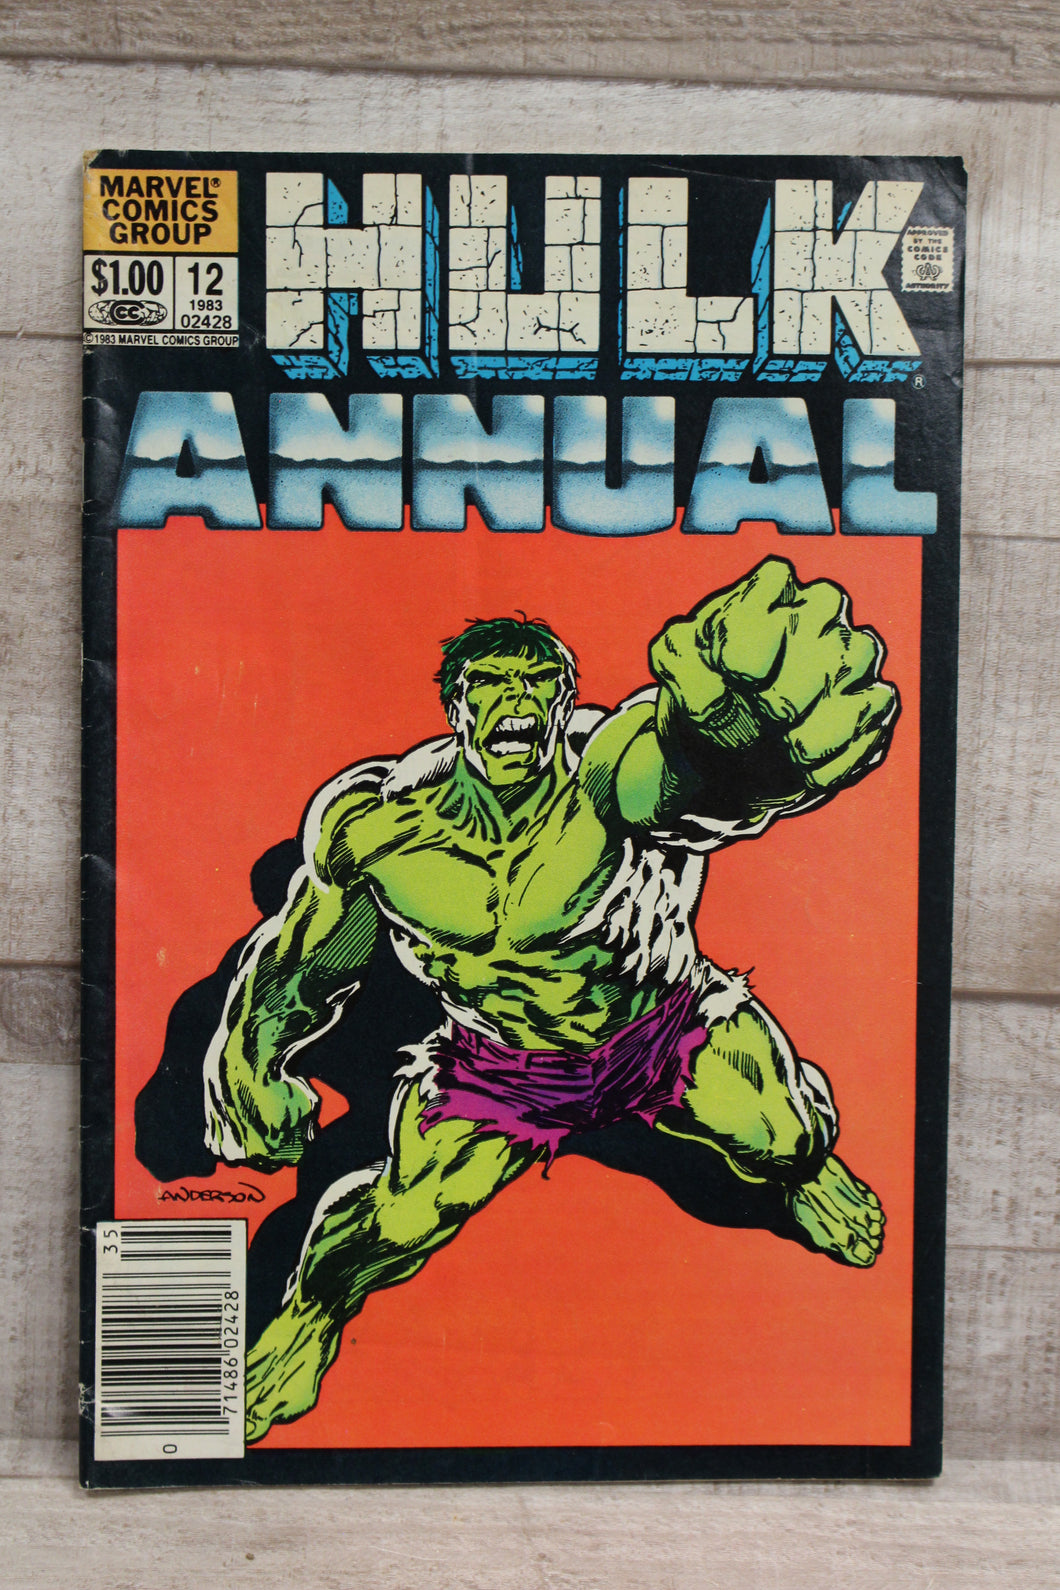 1983 Marvel Comics Hulk Annual - #12